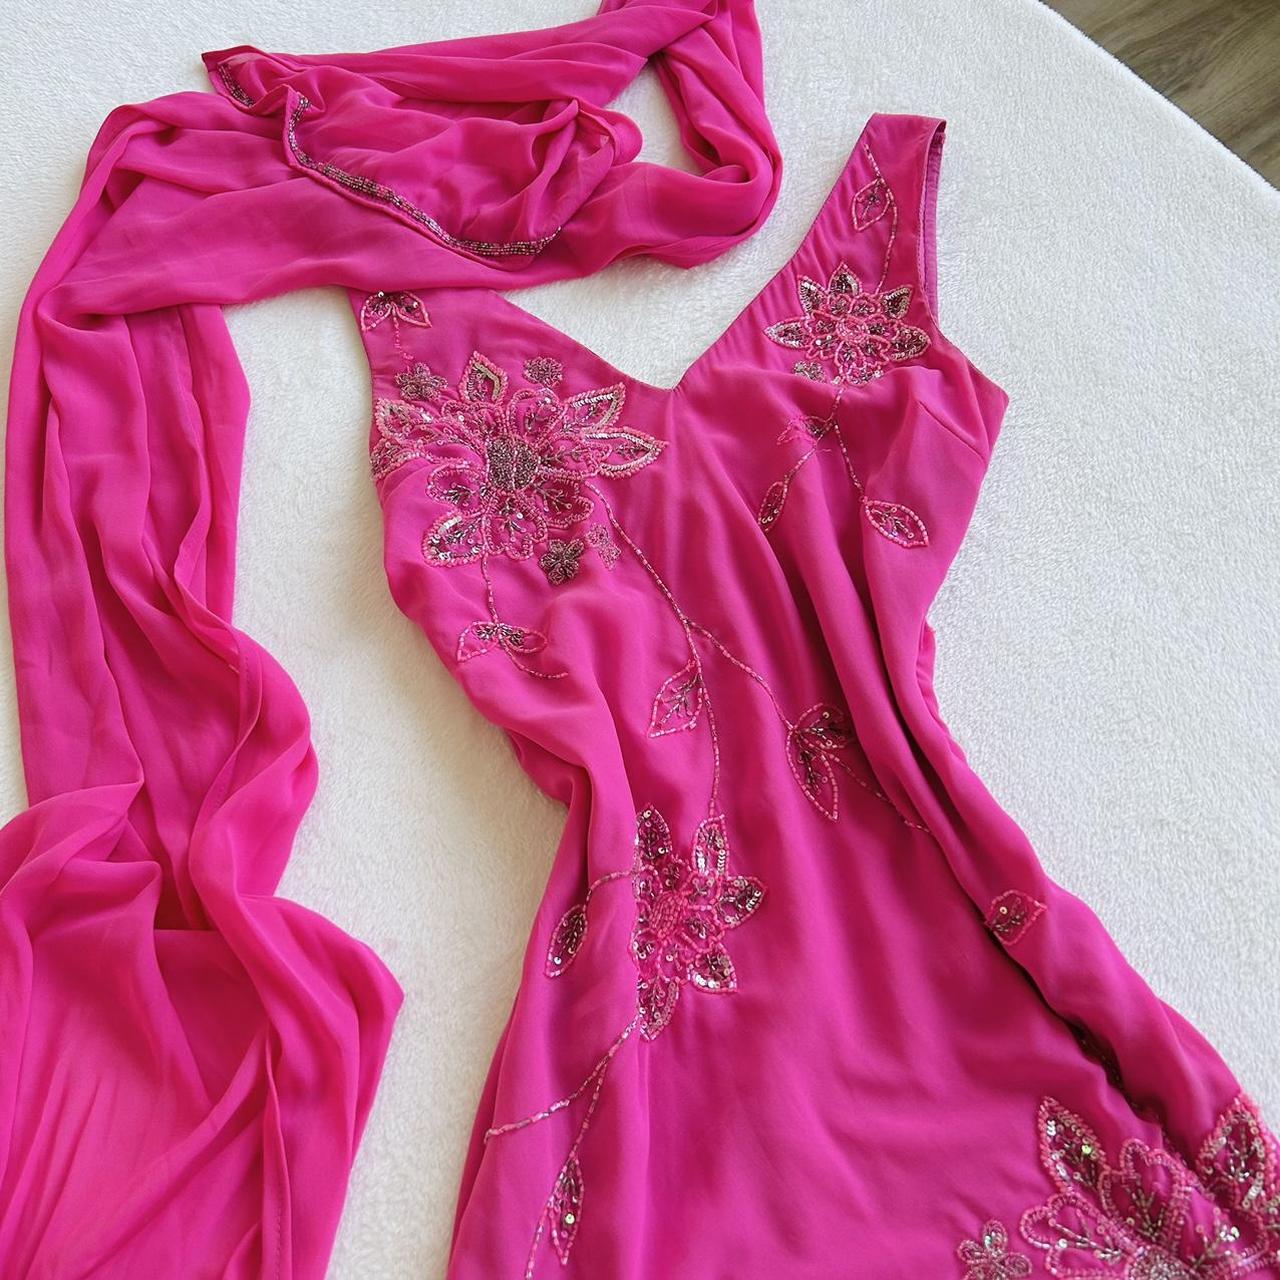 Fairy princess hot pink sparkle dress (M, M/L) A... - Depop